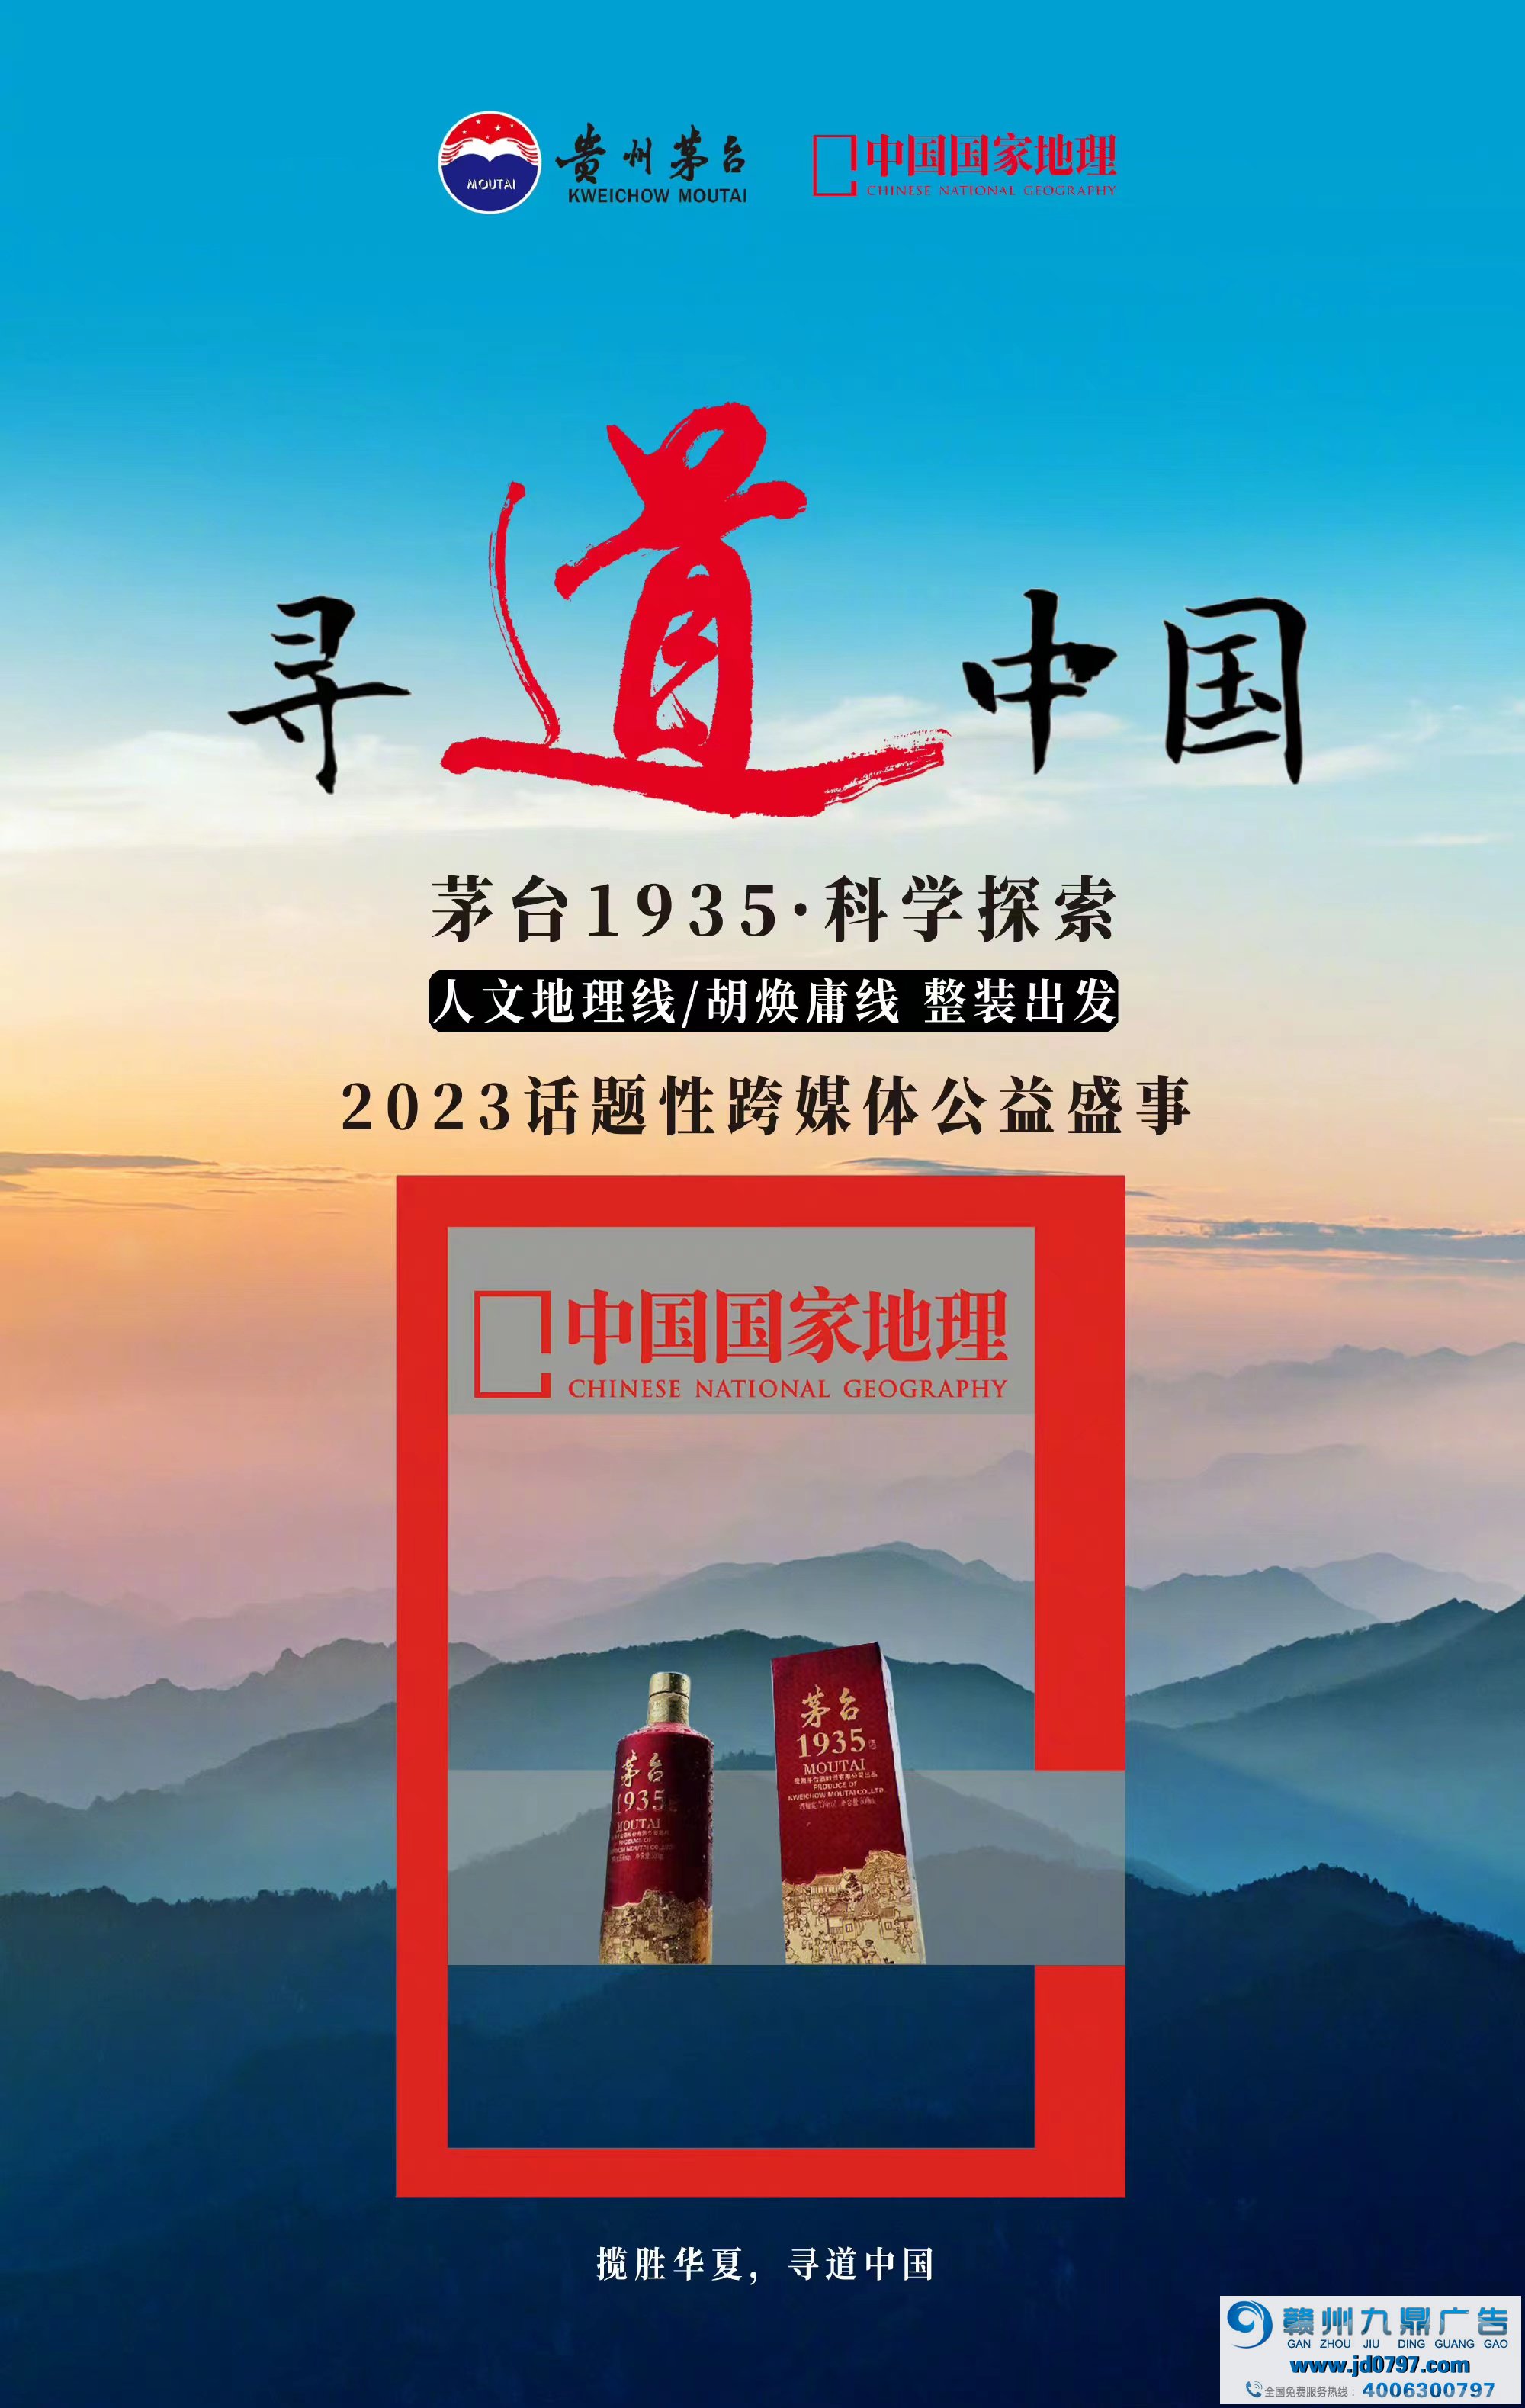 茅台1935与胡焕庸线双向奔赴，推出中国国家地理文创酒